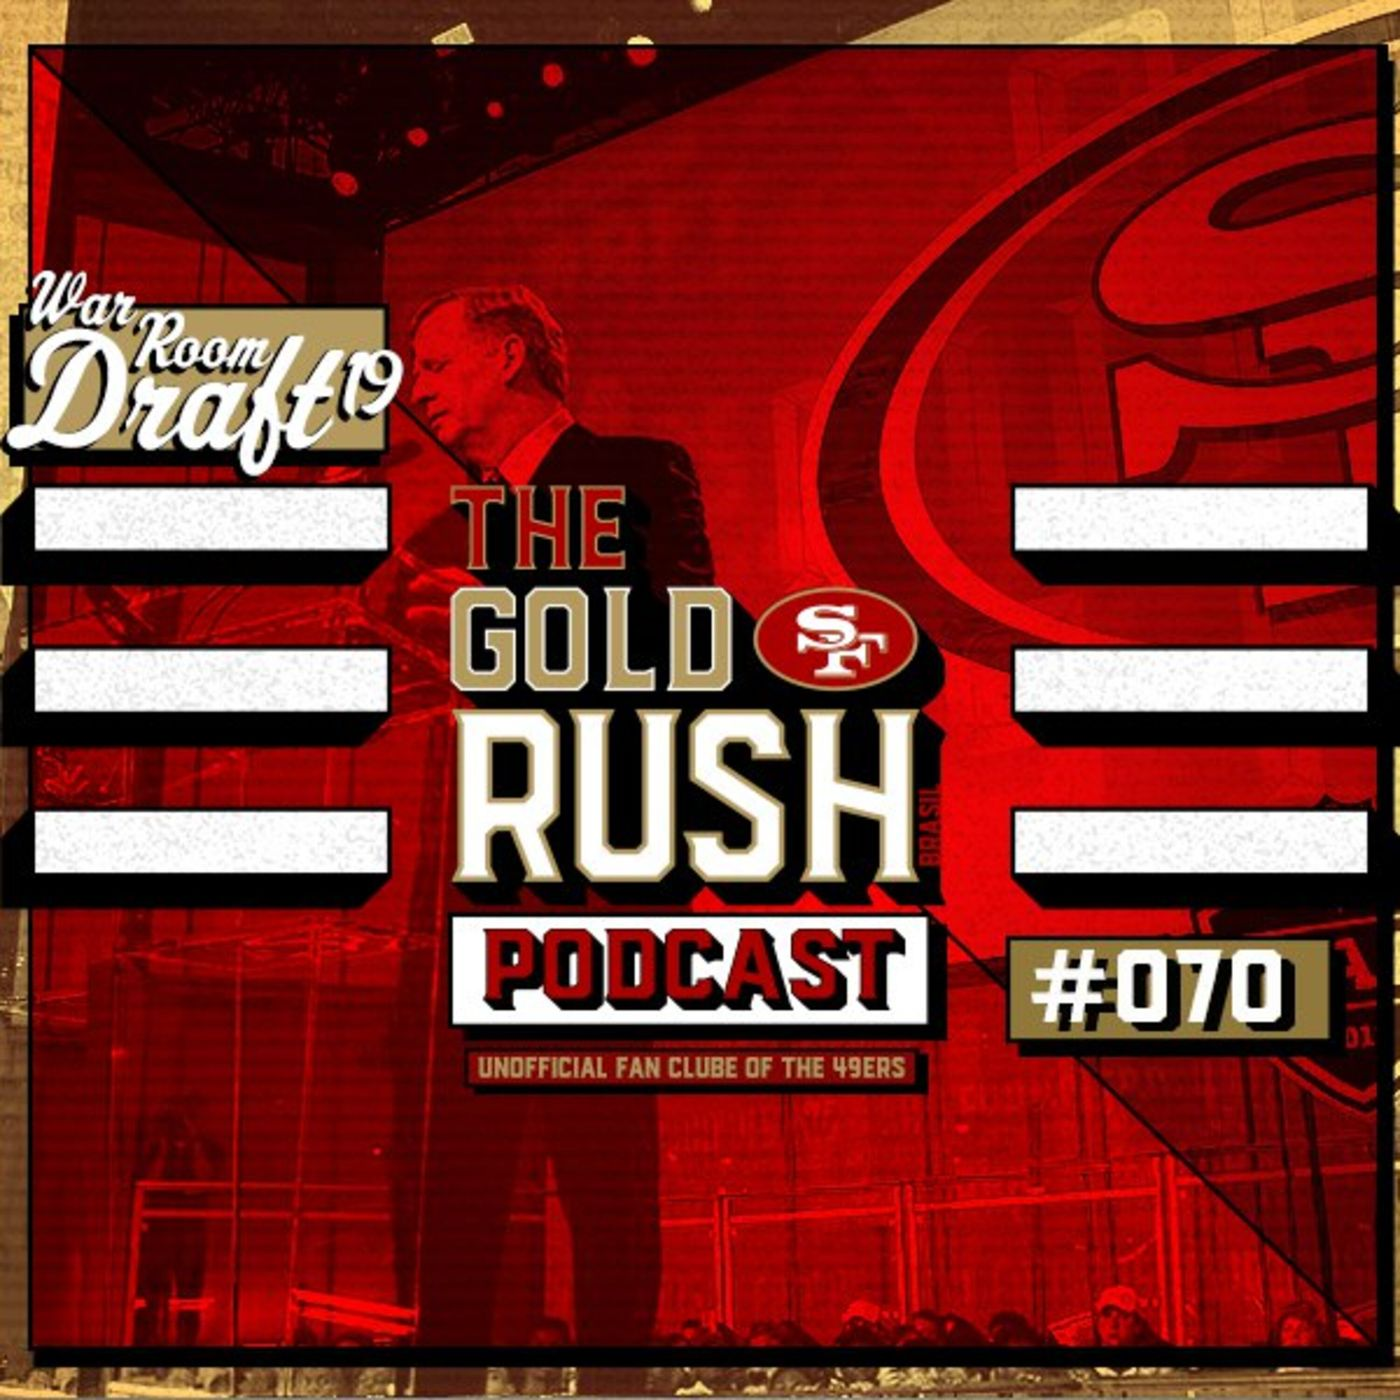 The Gold Rush Brasil Podcast 070 – War Room Draft 2019 49ers